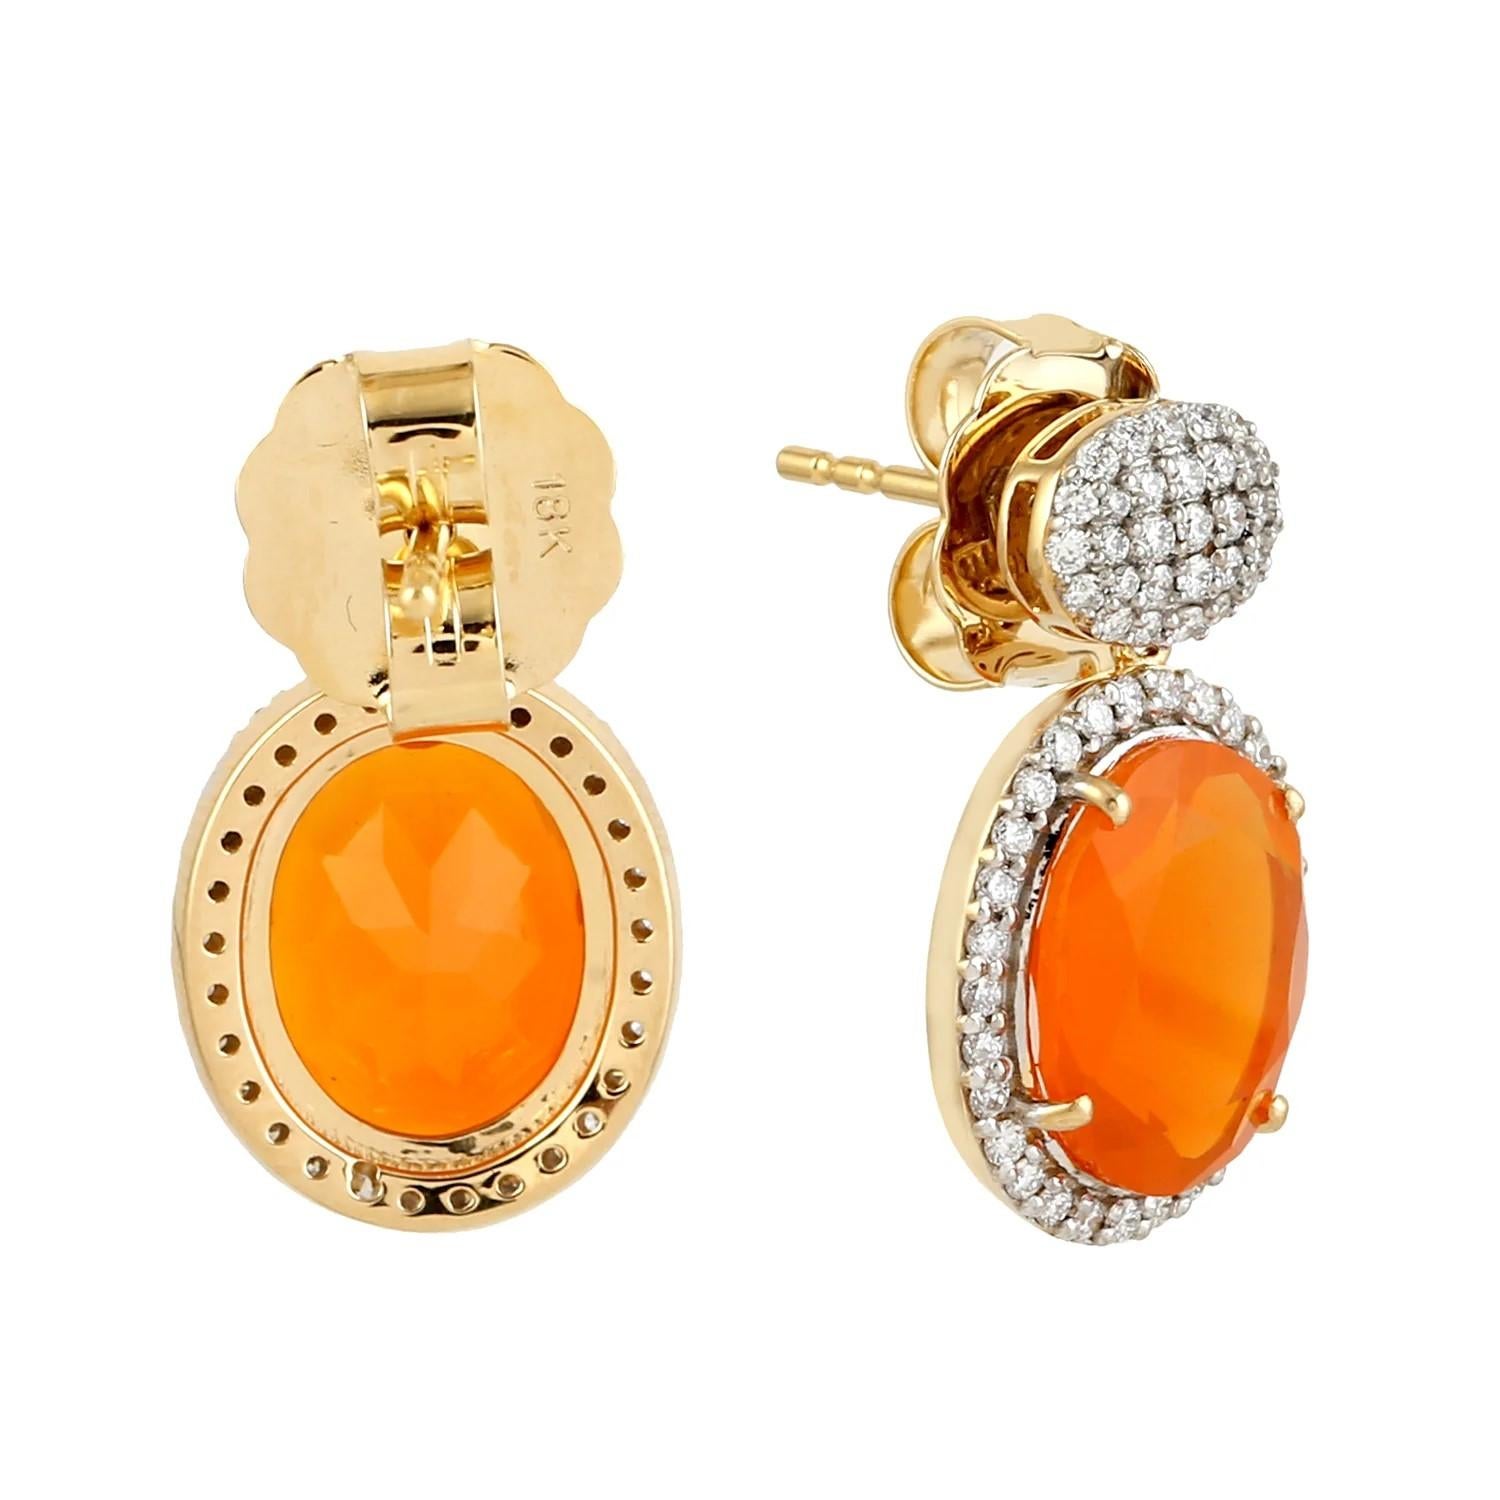 Oval Cut Meghna Jewels 4.58 Carats Fire Opal Diamond 14 Karat Gold Earrings For Sale